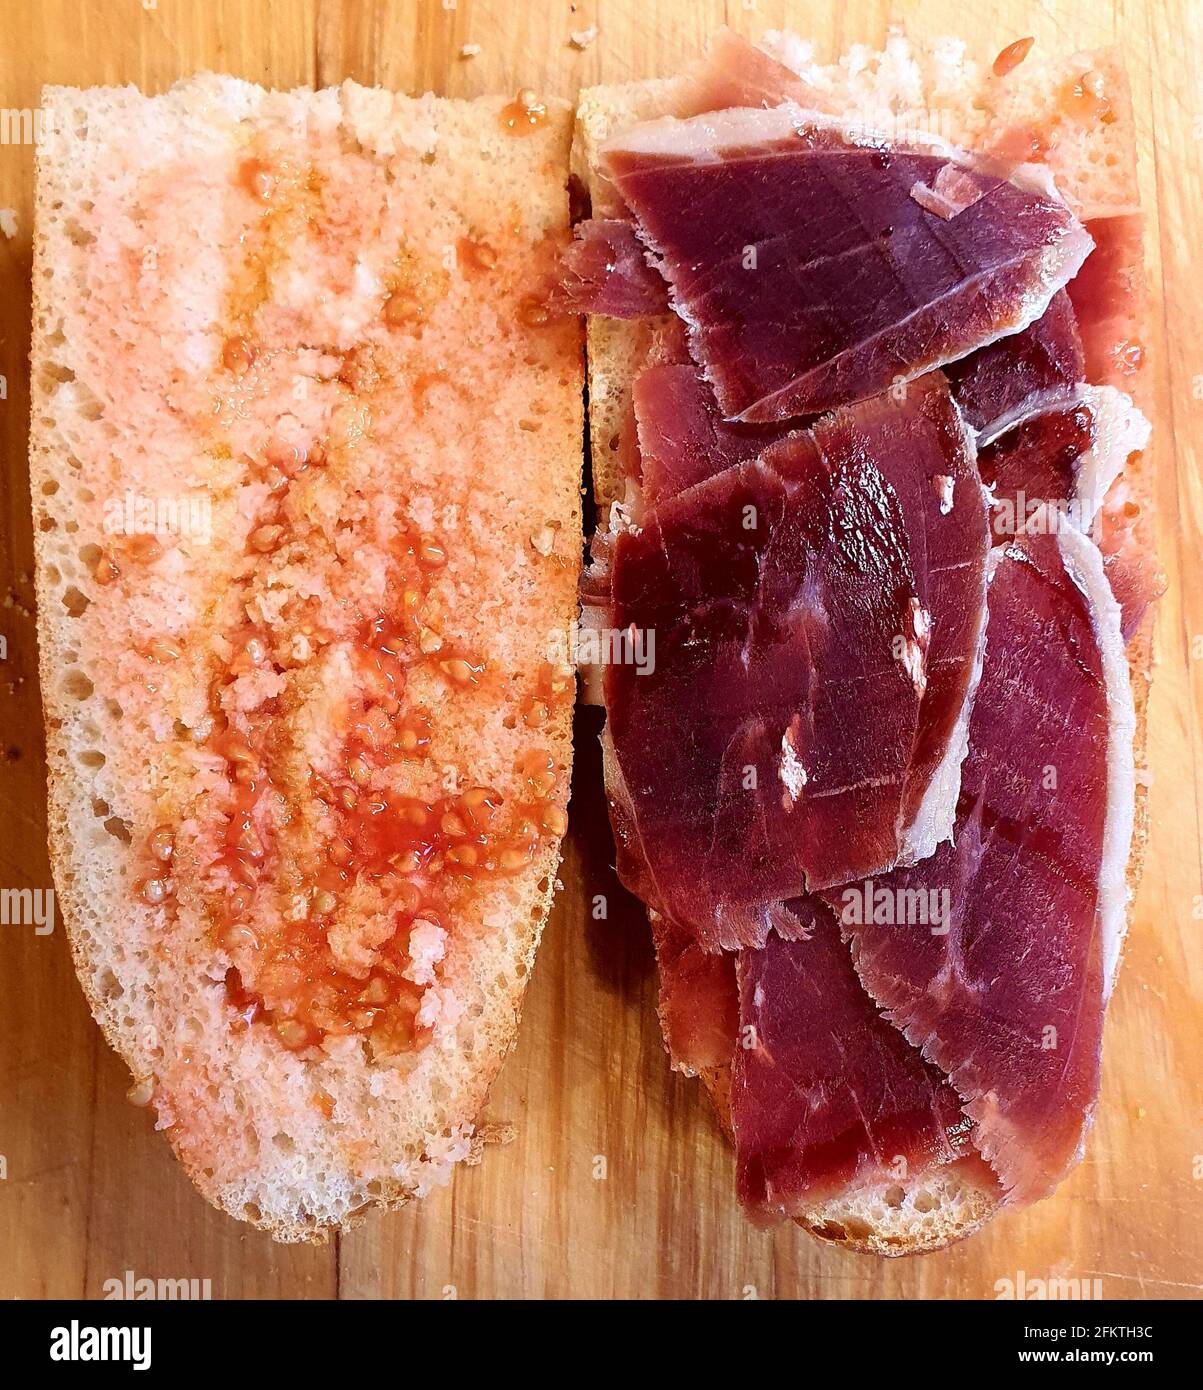 Das iberische Marmelade-Sandwich ist ohne Zweifel eines der besten gastronomischen Genüsse, die es gibt. Die Tomate auf beide Scheiben verteilen und mit Olive bestreichen Stockfoto